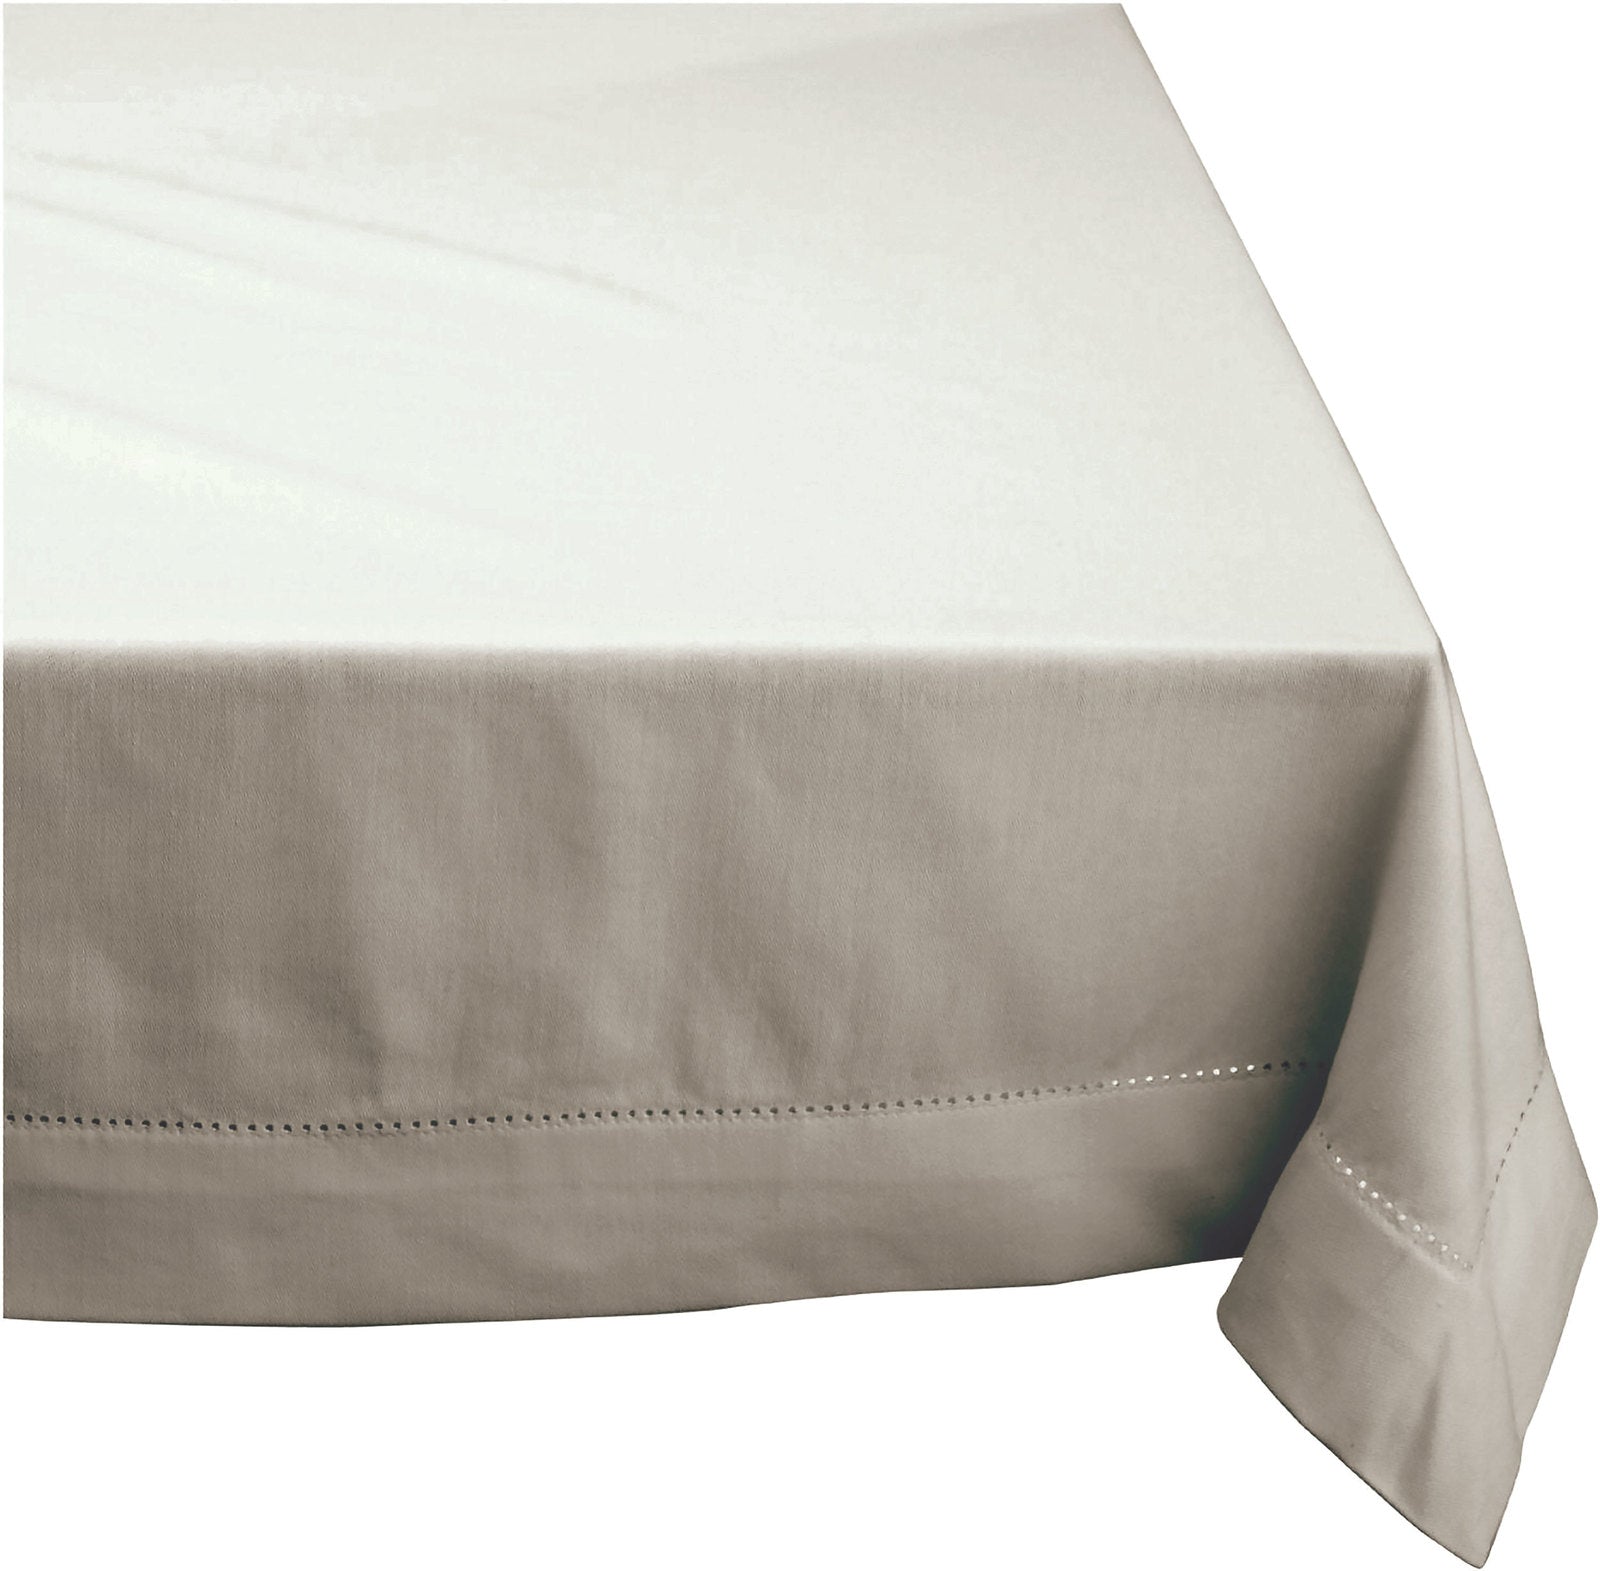 Elegant Hemstitch Tablecloth - 100% Cotton - 180cm Round in White